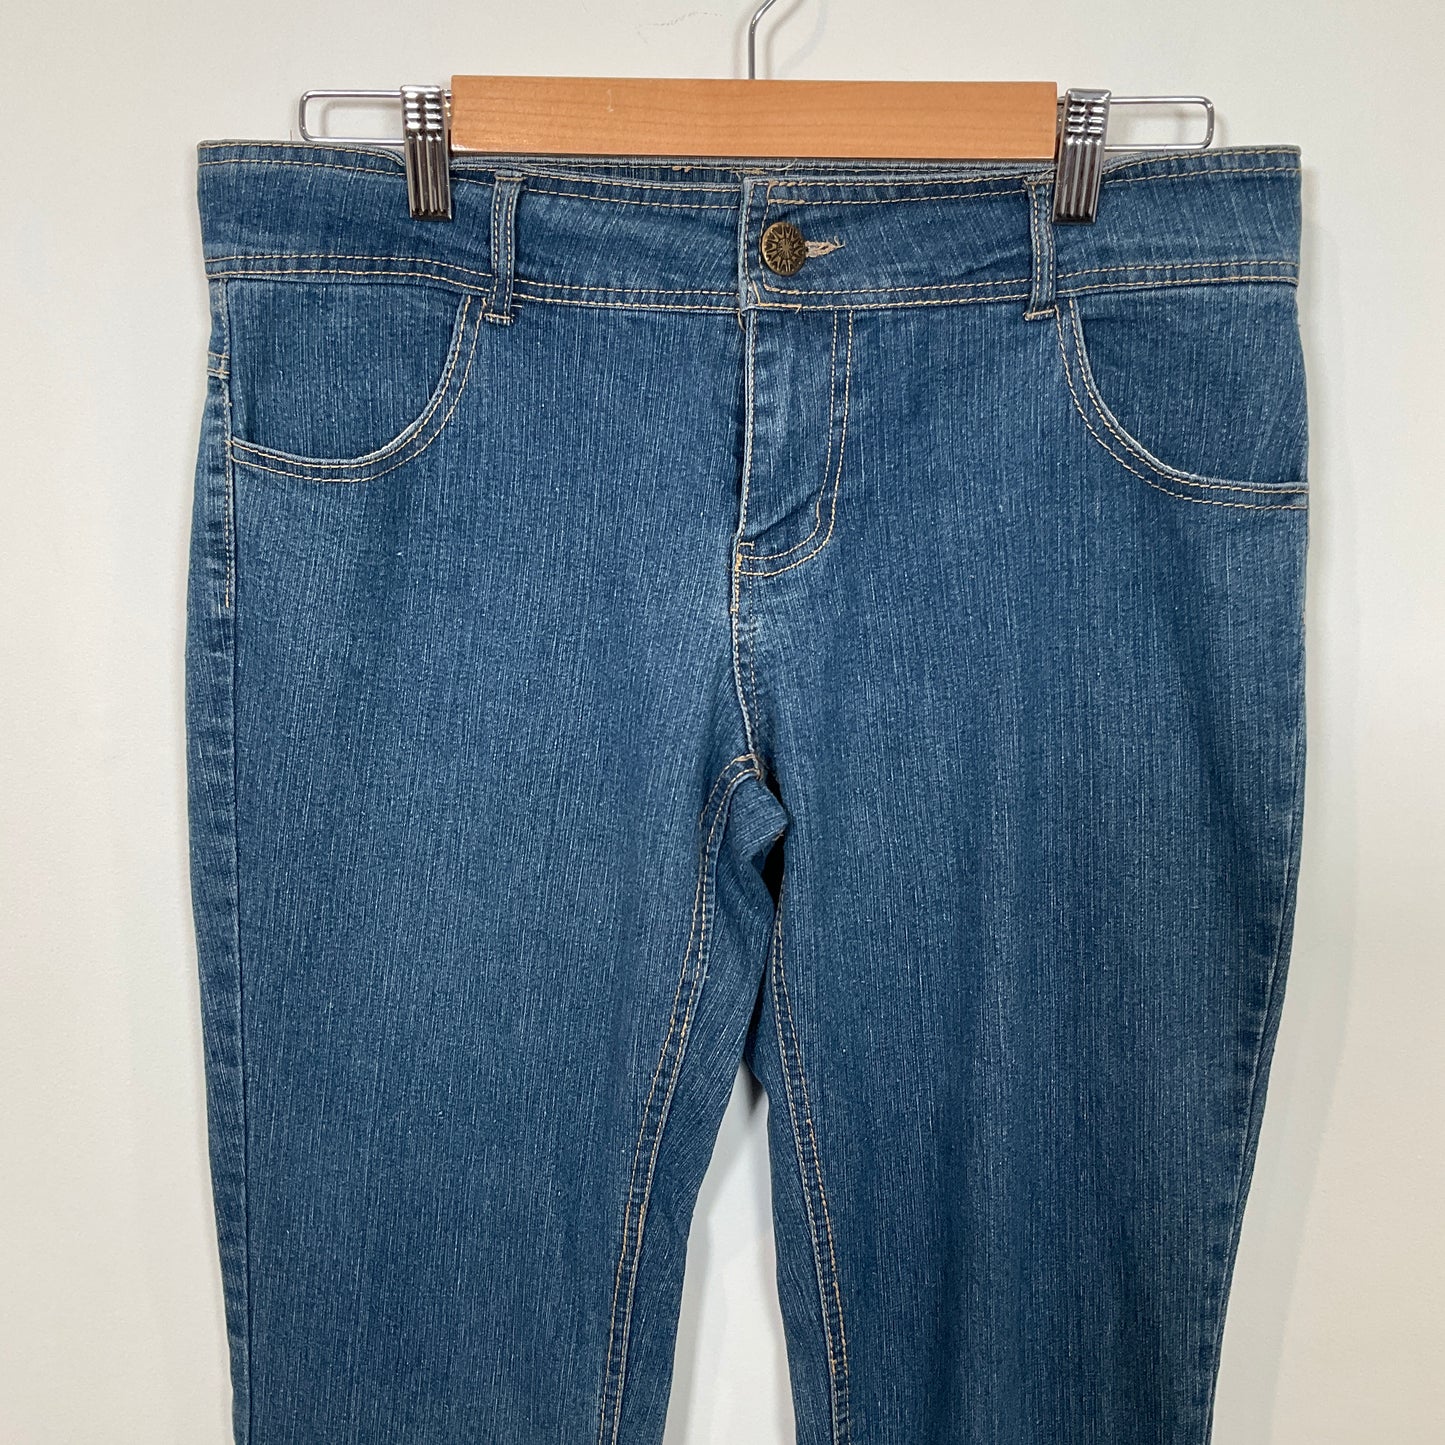 inSync - Fashion Jeans